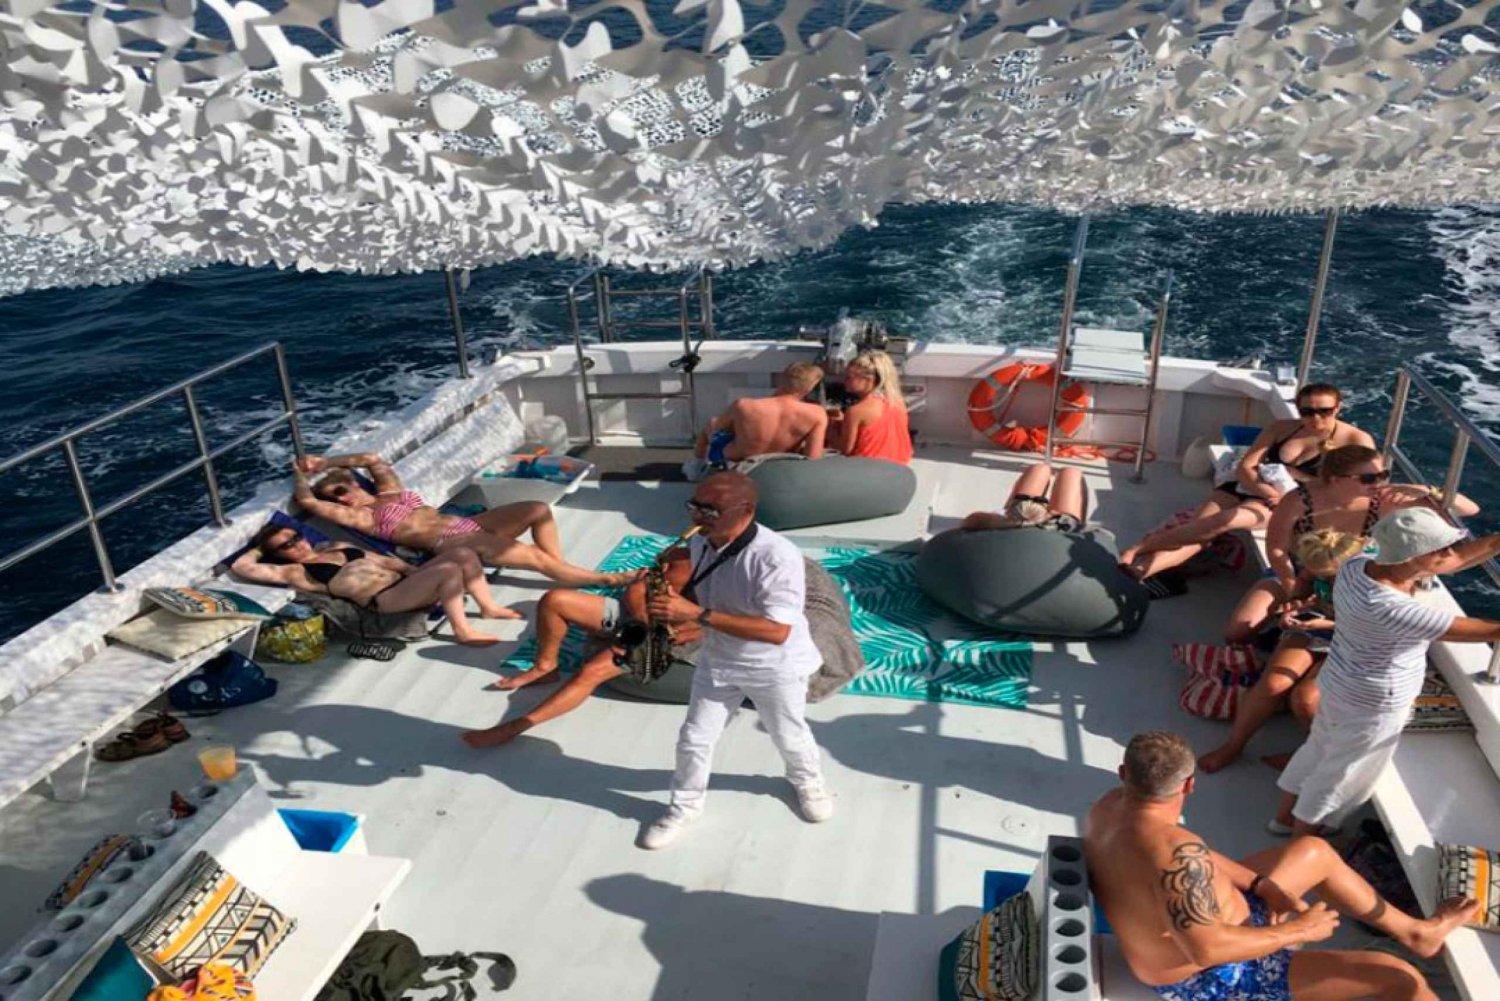 Palma: gita in barca a Punta Negra e Ses Illetes con musica dal vivo